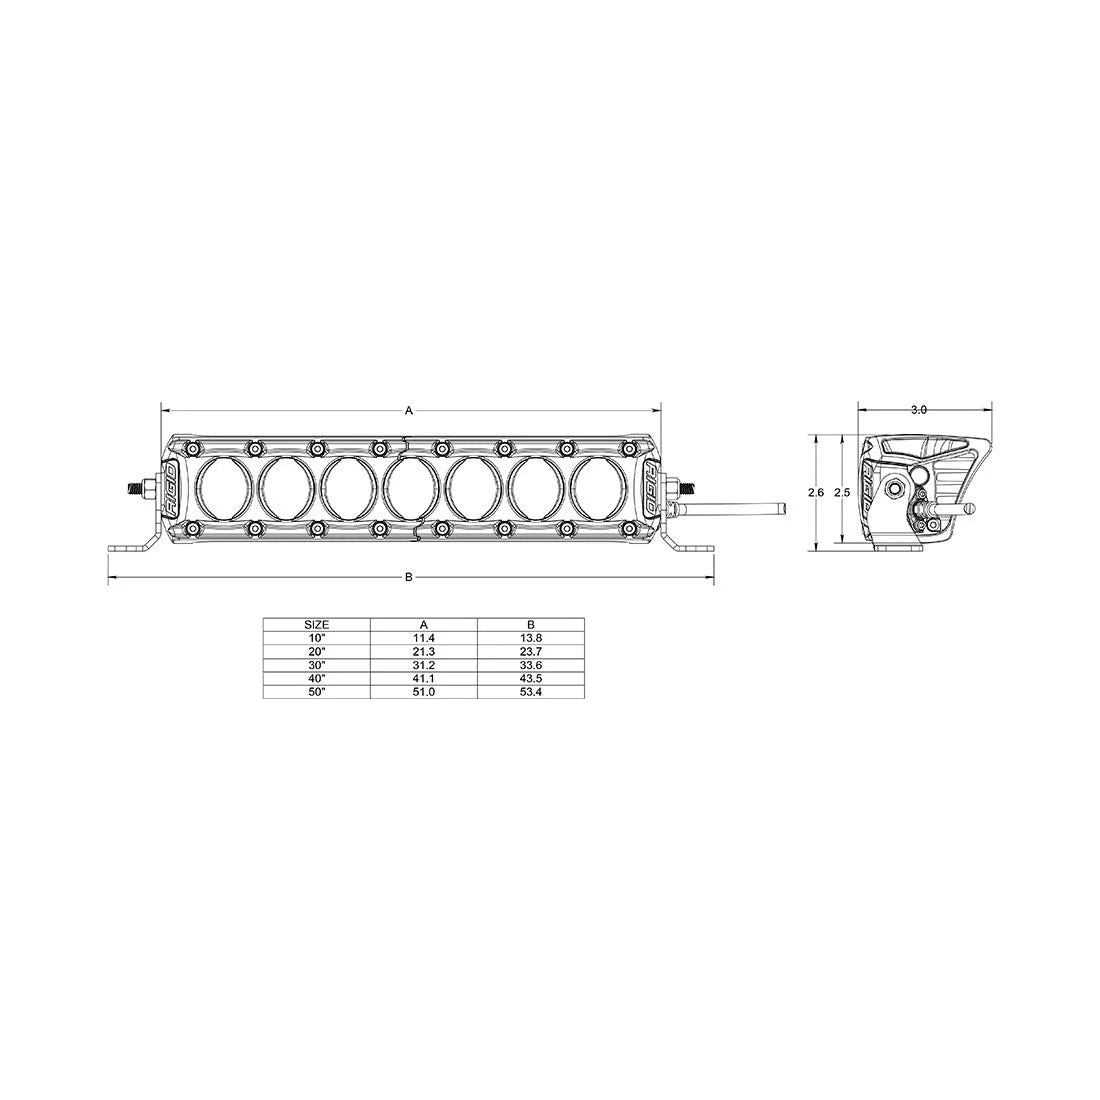 RIGID Industries Revolve Light Bar with Amber Backlight (10"-50" Lightbar Variations)